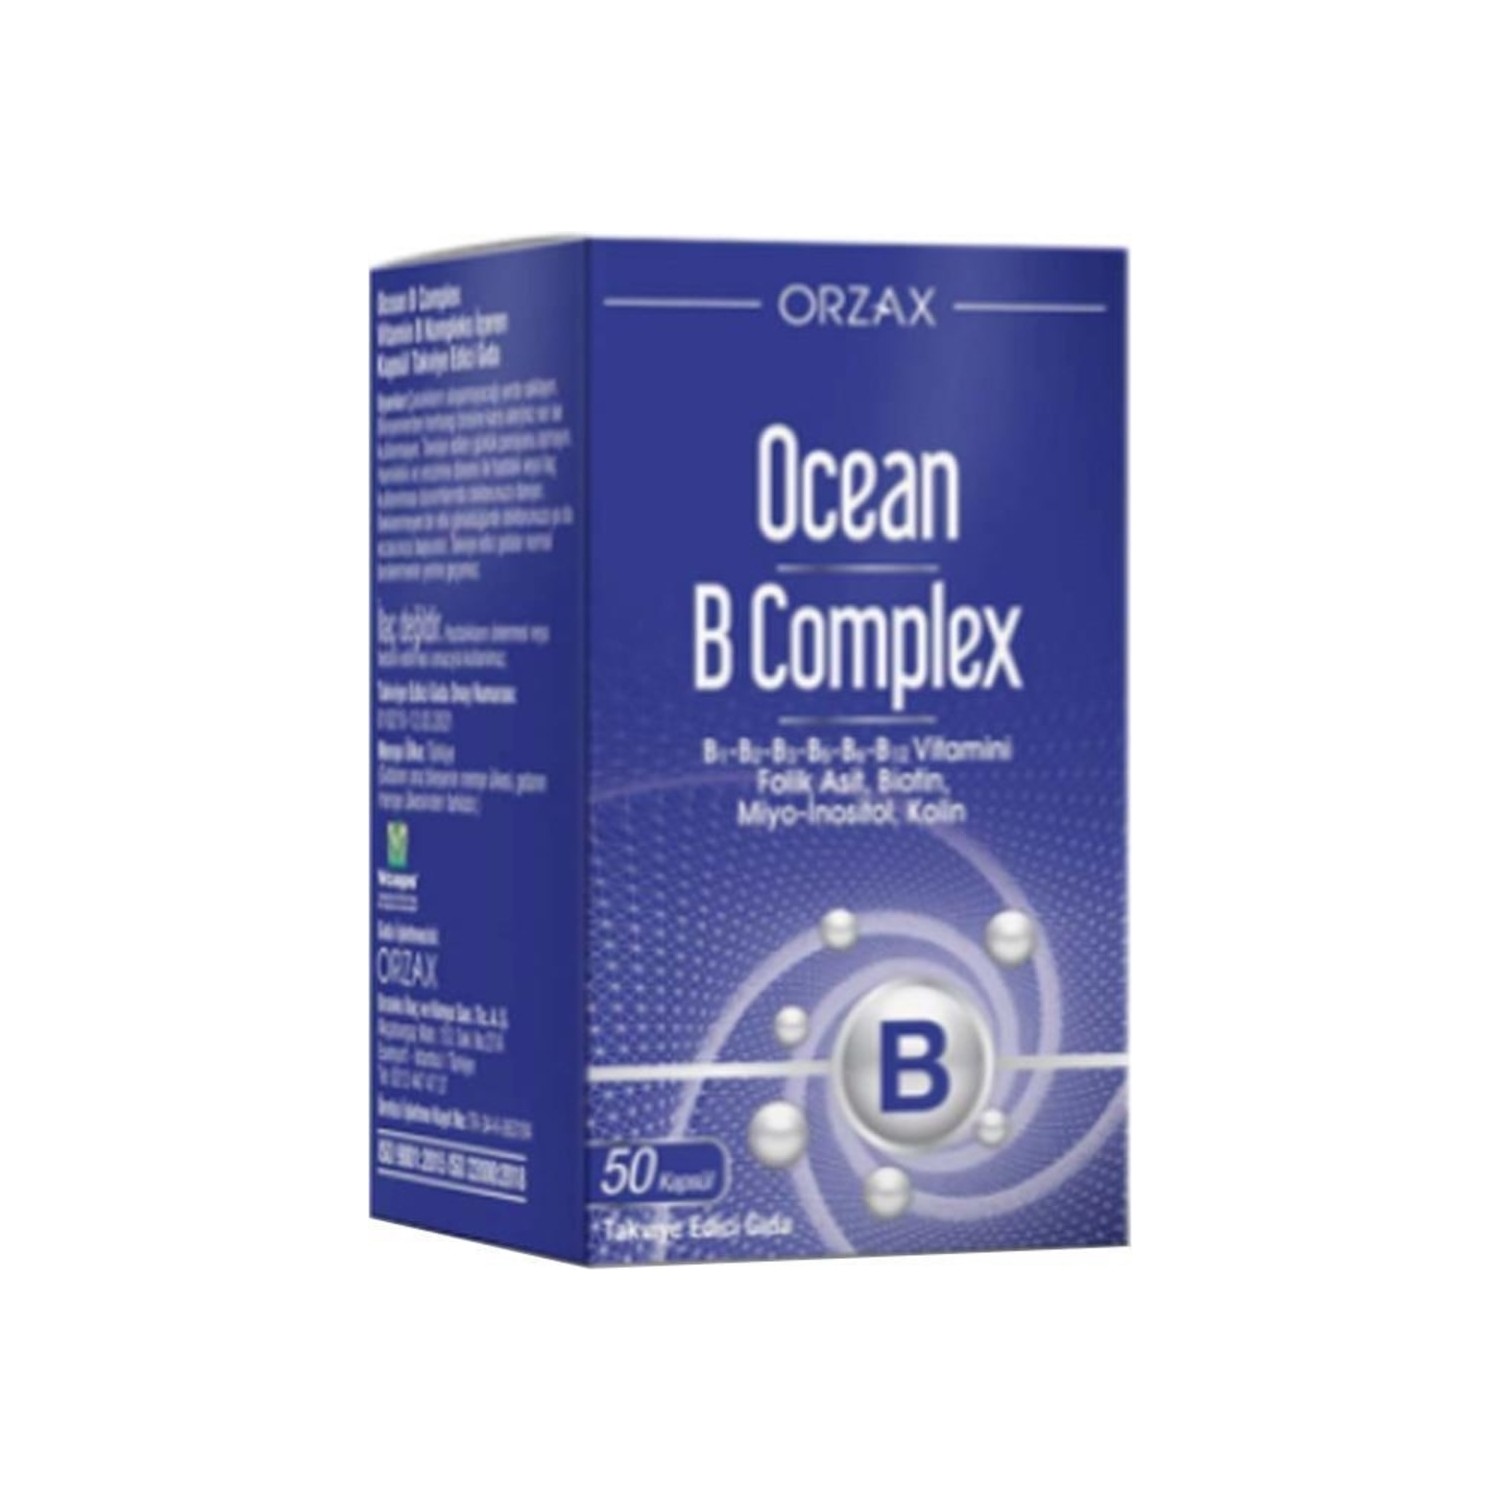 Пищевая комплексная добавка Ocean Orzax B Supplementary Food, 50 капсул комплекс добавок orzax ocean b complex supplementary food 50 капсул